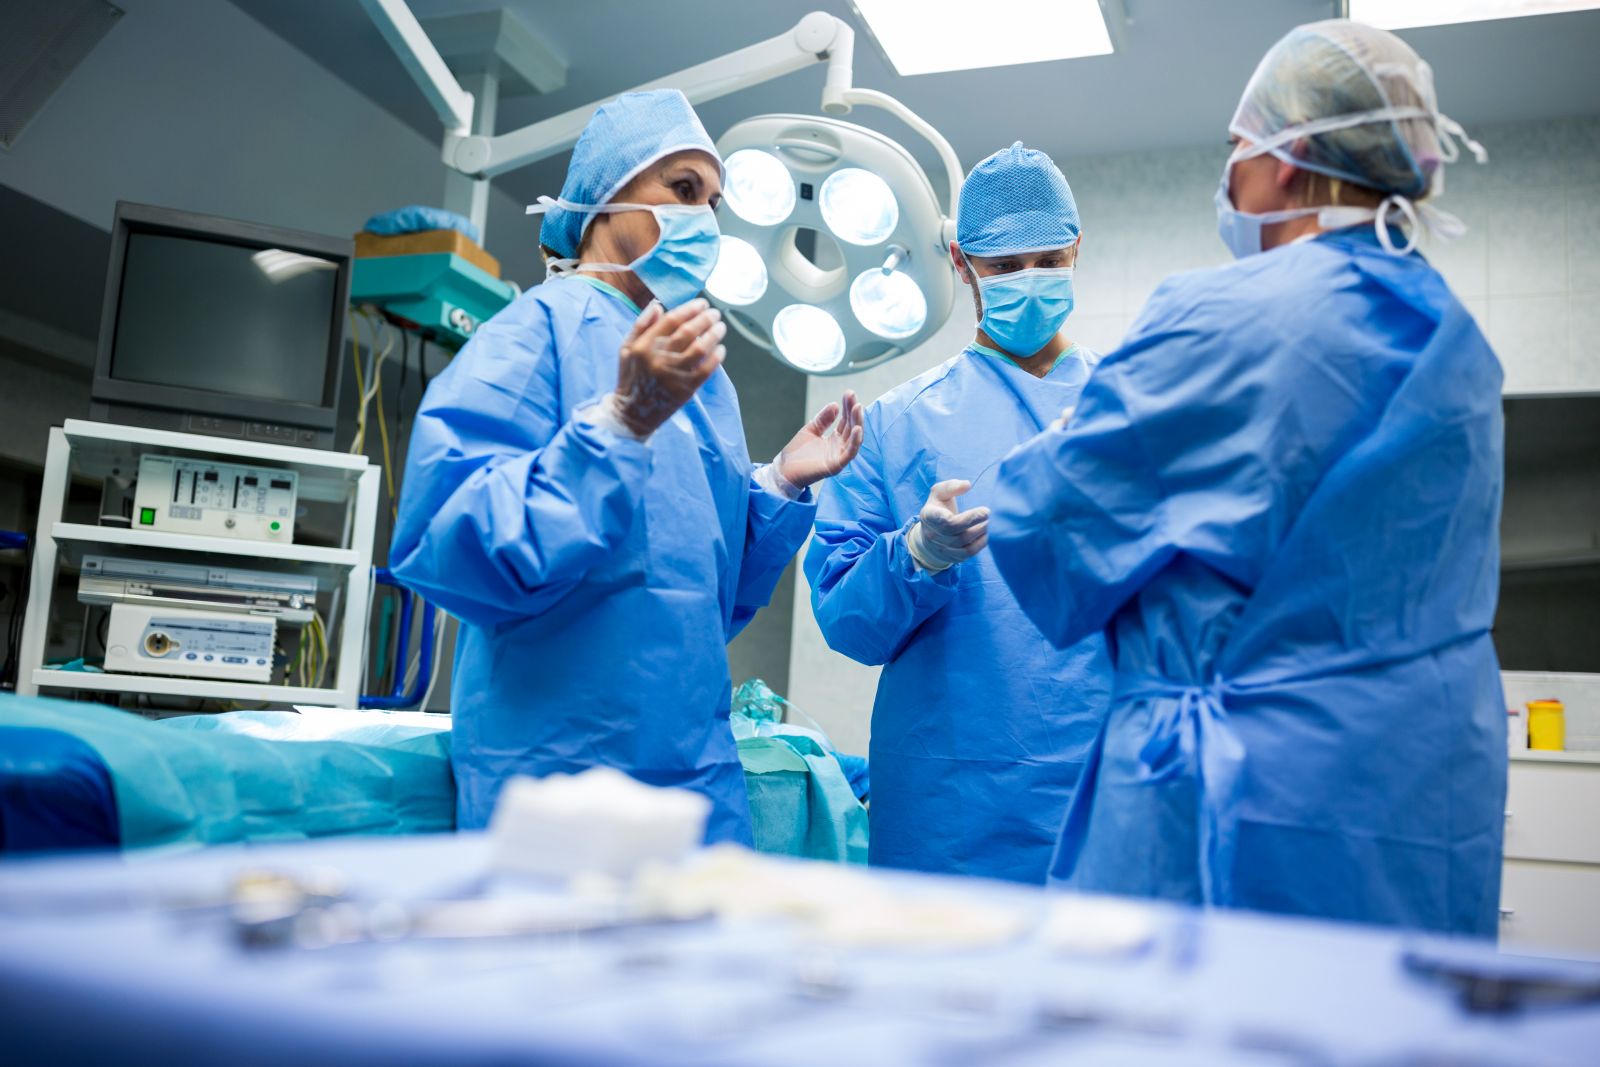 Онкологическая патология относится к неотложной помощи — хирург об операциях во время карантина